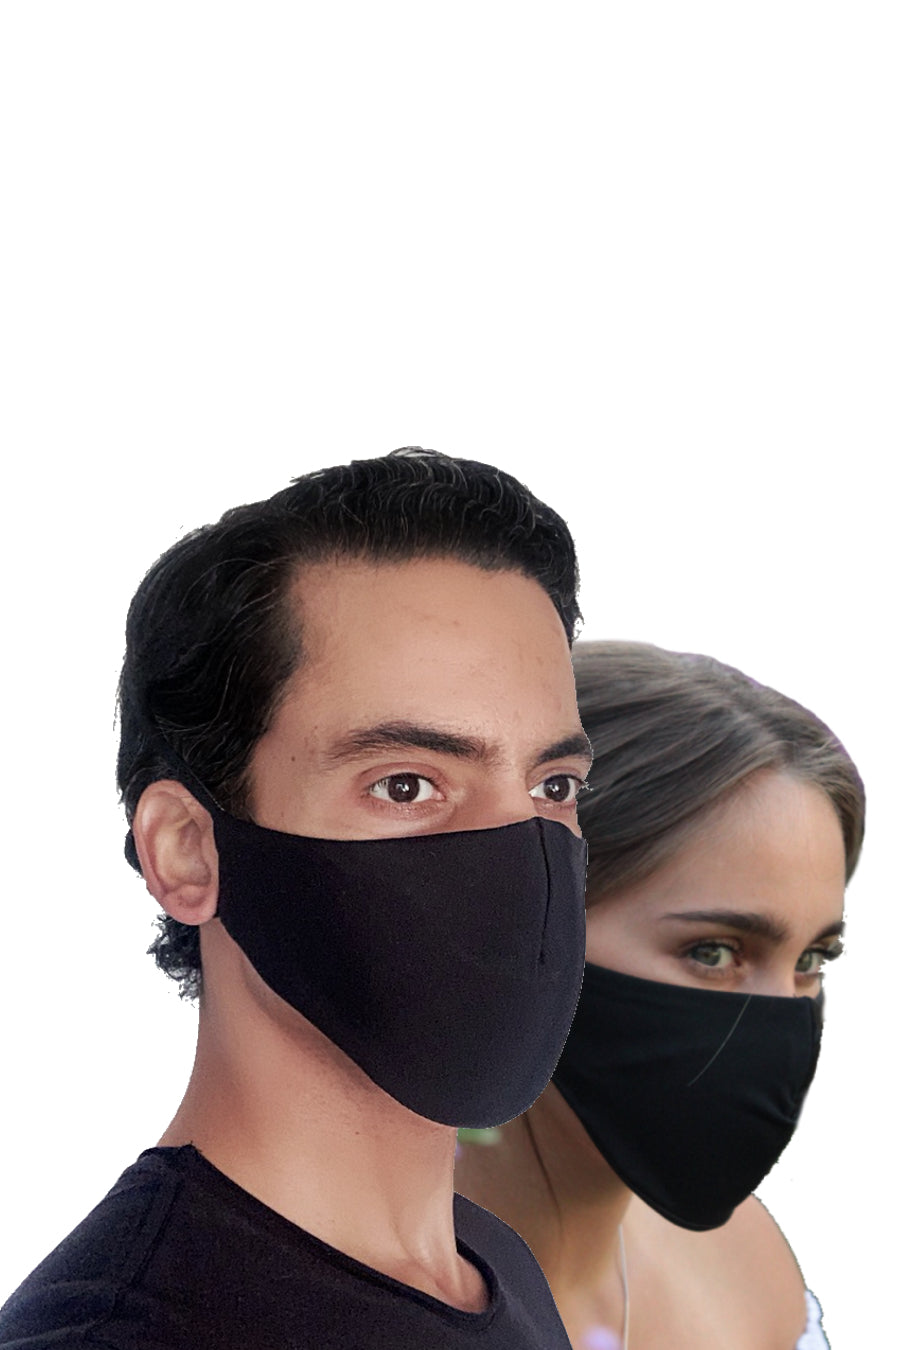 MultiLayer, ReUsable Face Masks